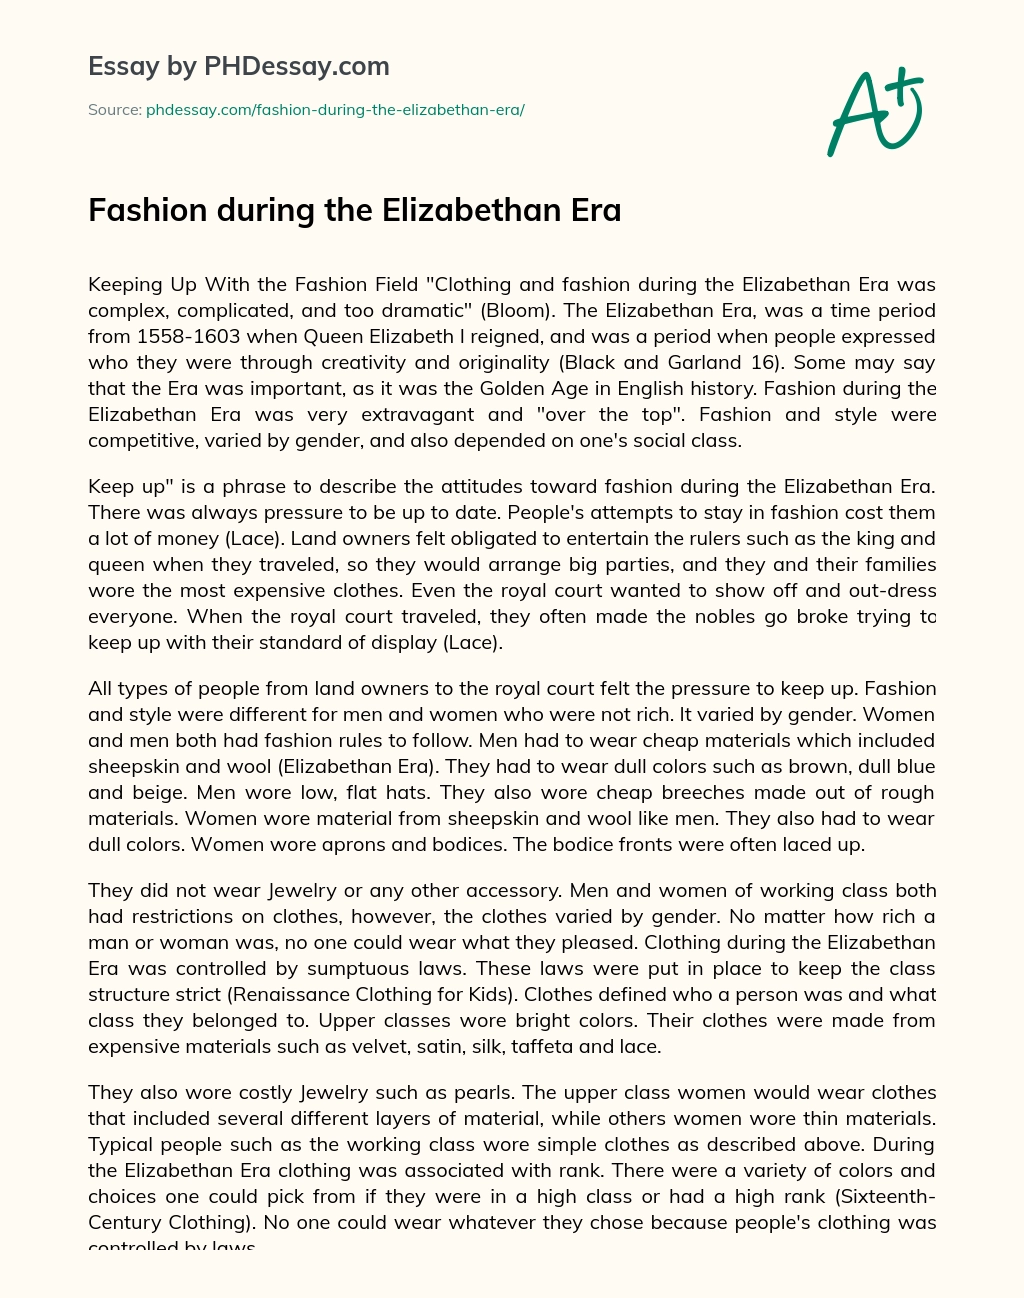 Fashion during the Elizabethan Era essay